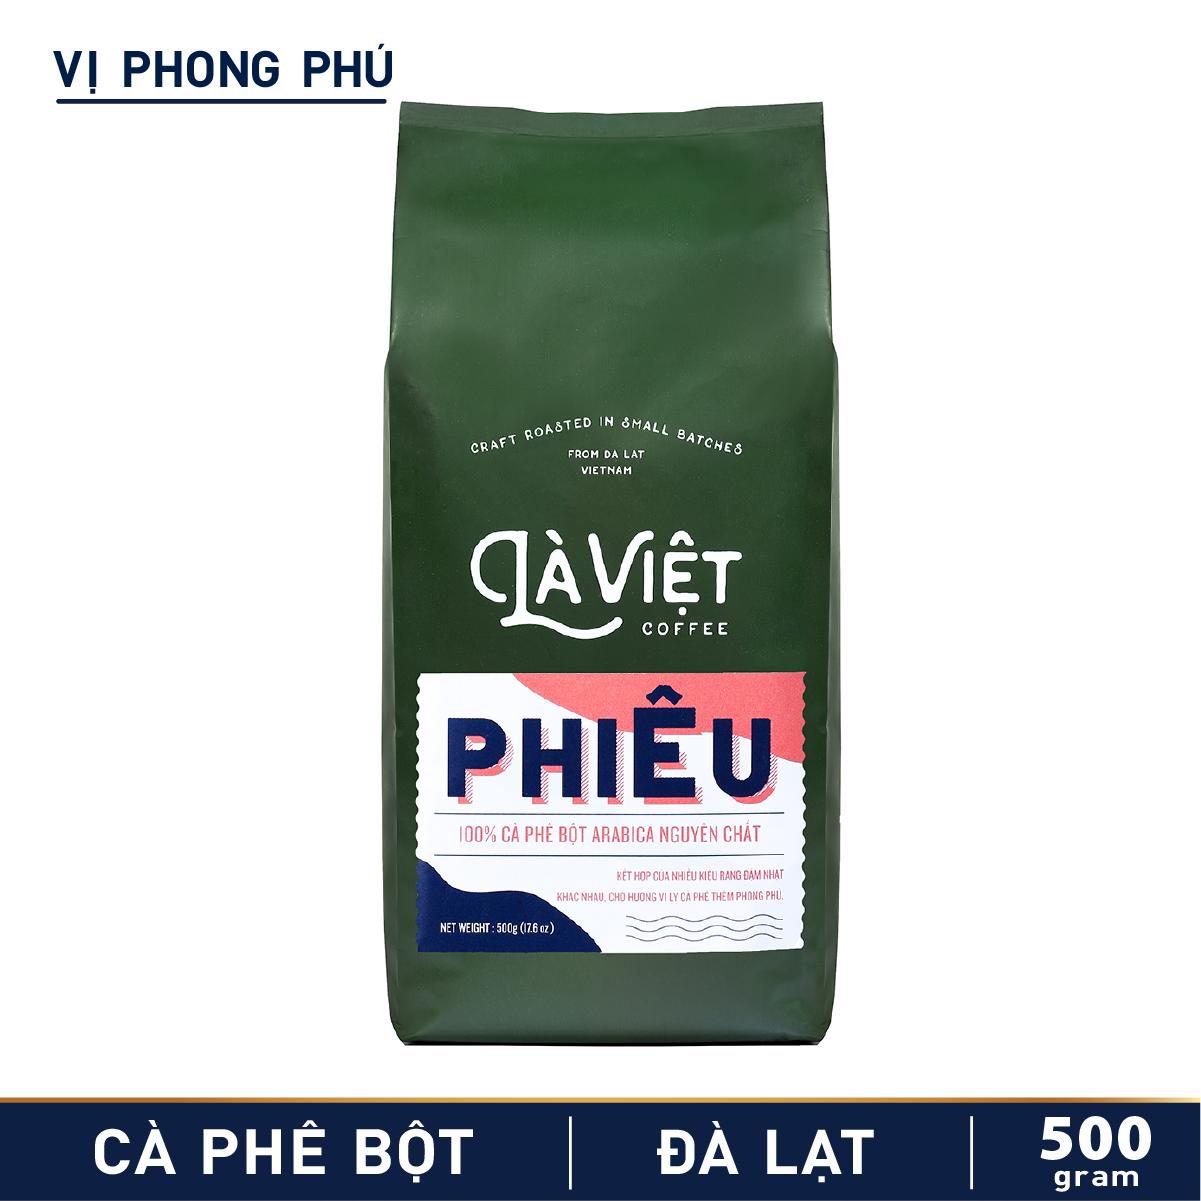 Cà Phê Bột Là Việt Phiêu 100% Arabica 500g Vị Phong Phú